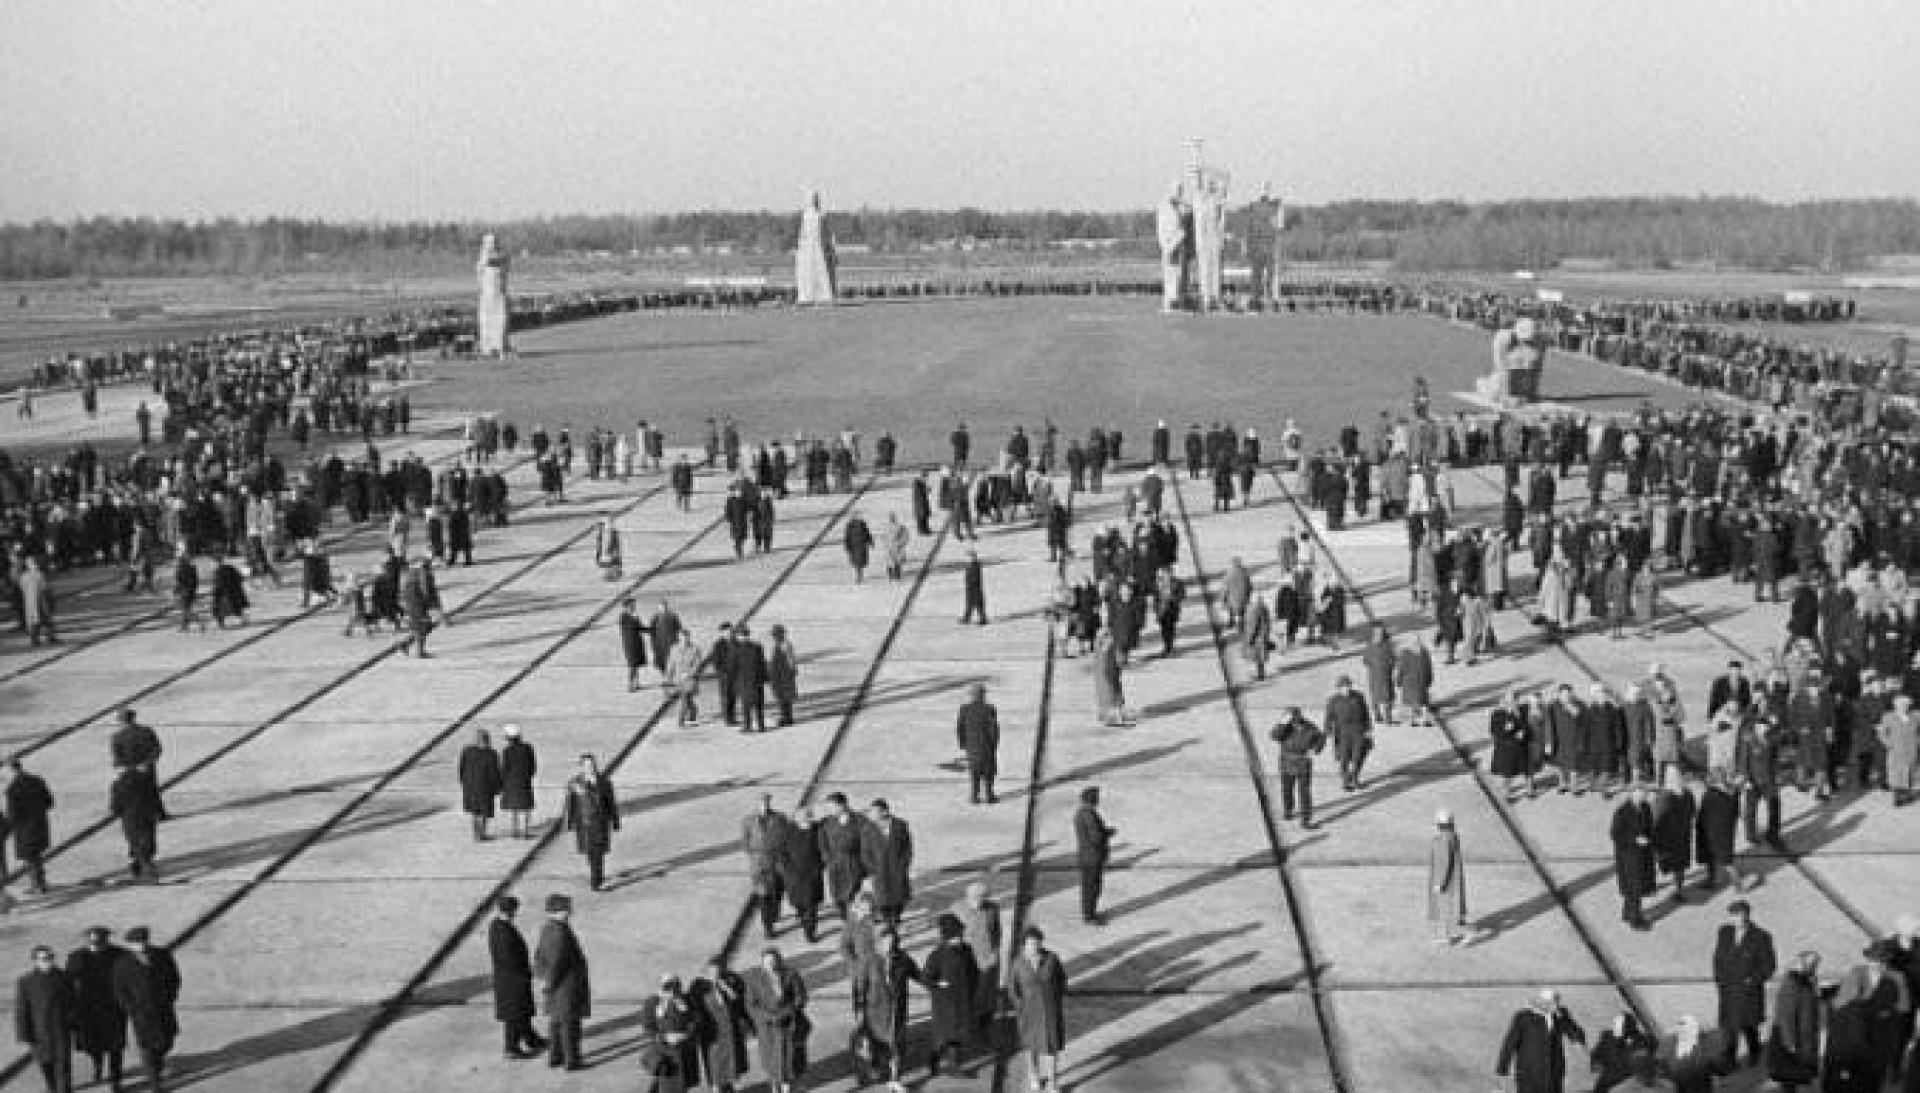 The memorial plaza at Salaspils (1968).